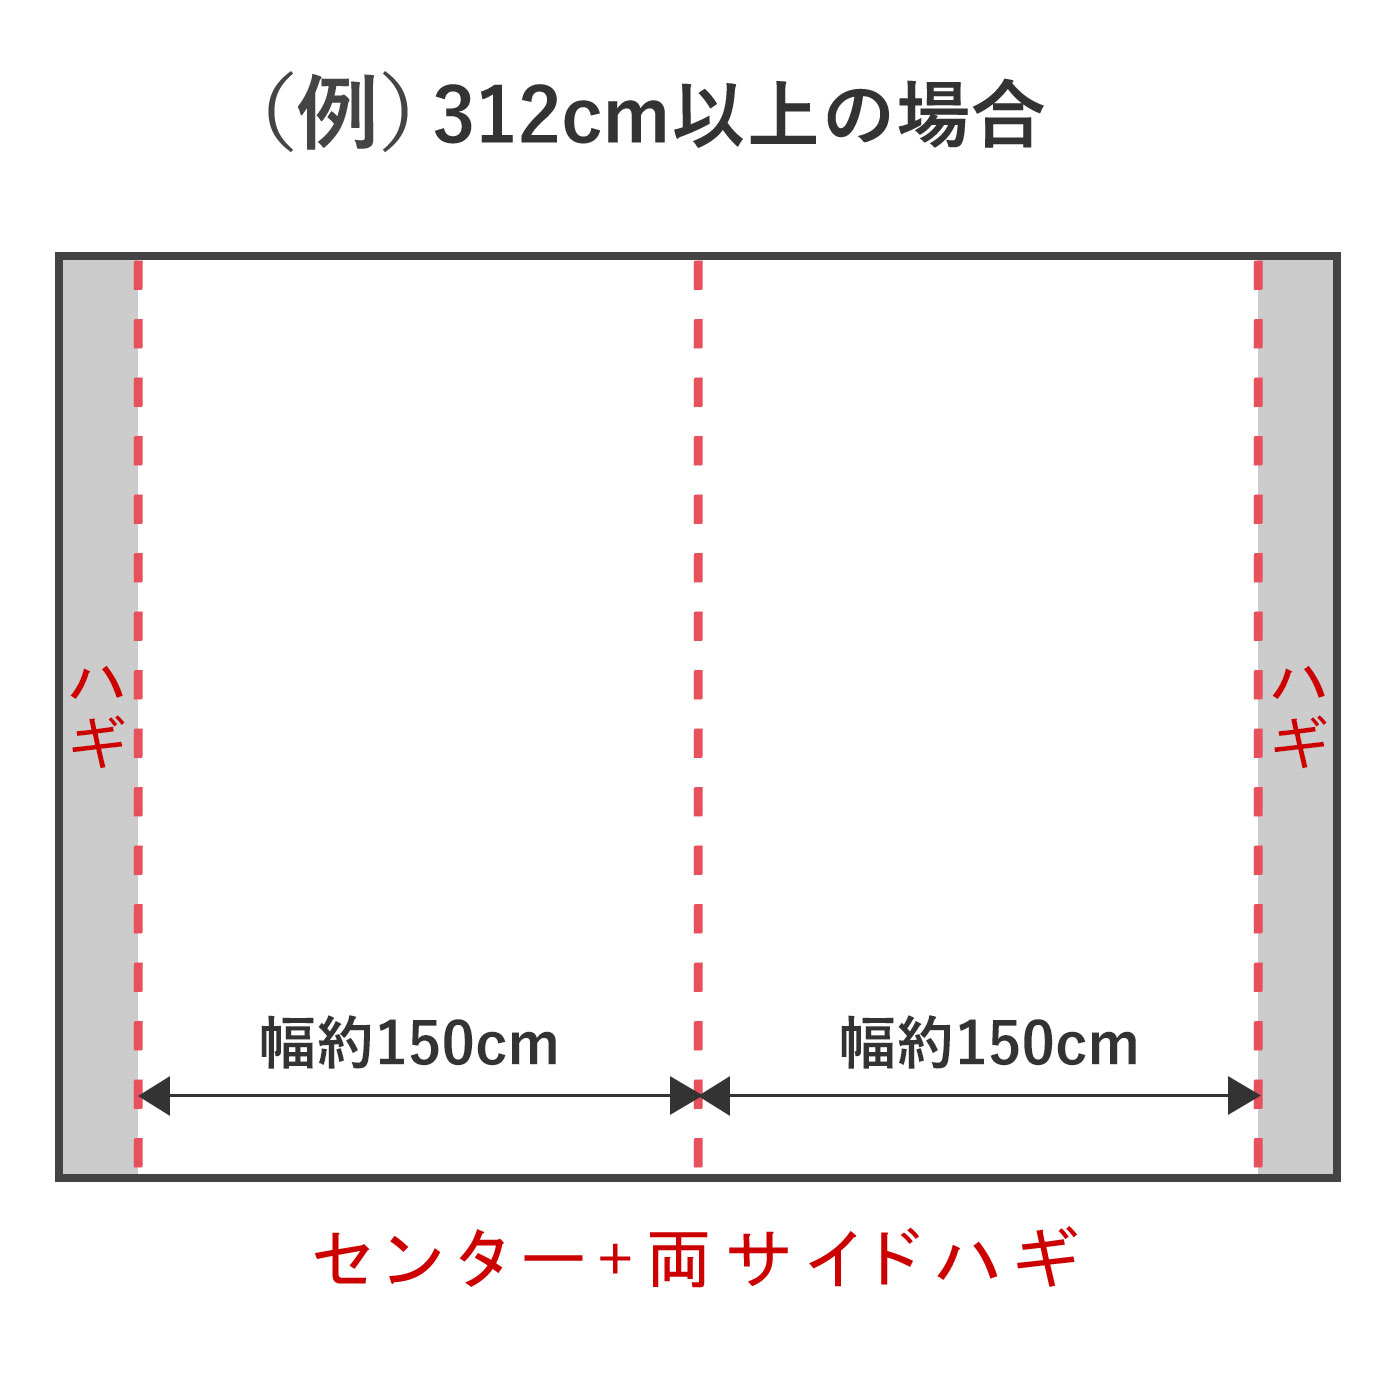 幅312cm以上の場合は、センター+両サイドハギとなります。